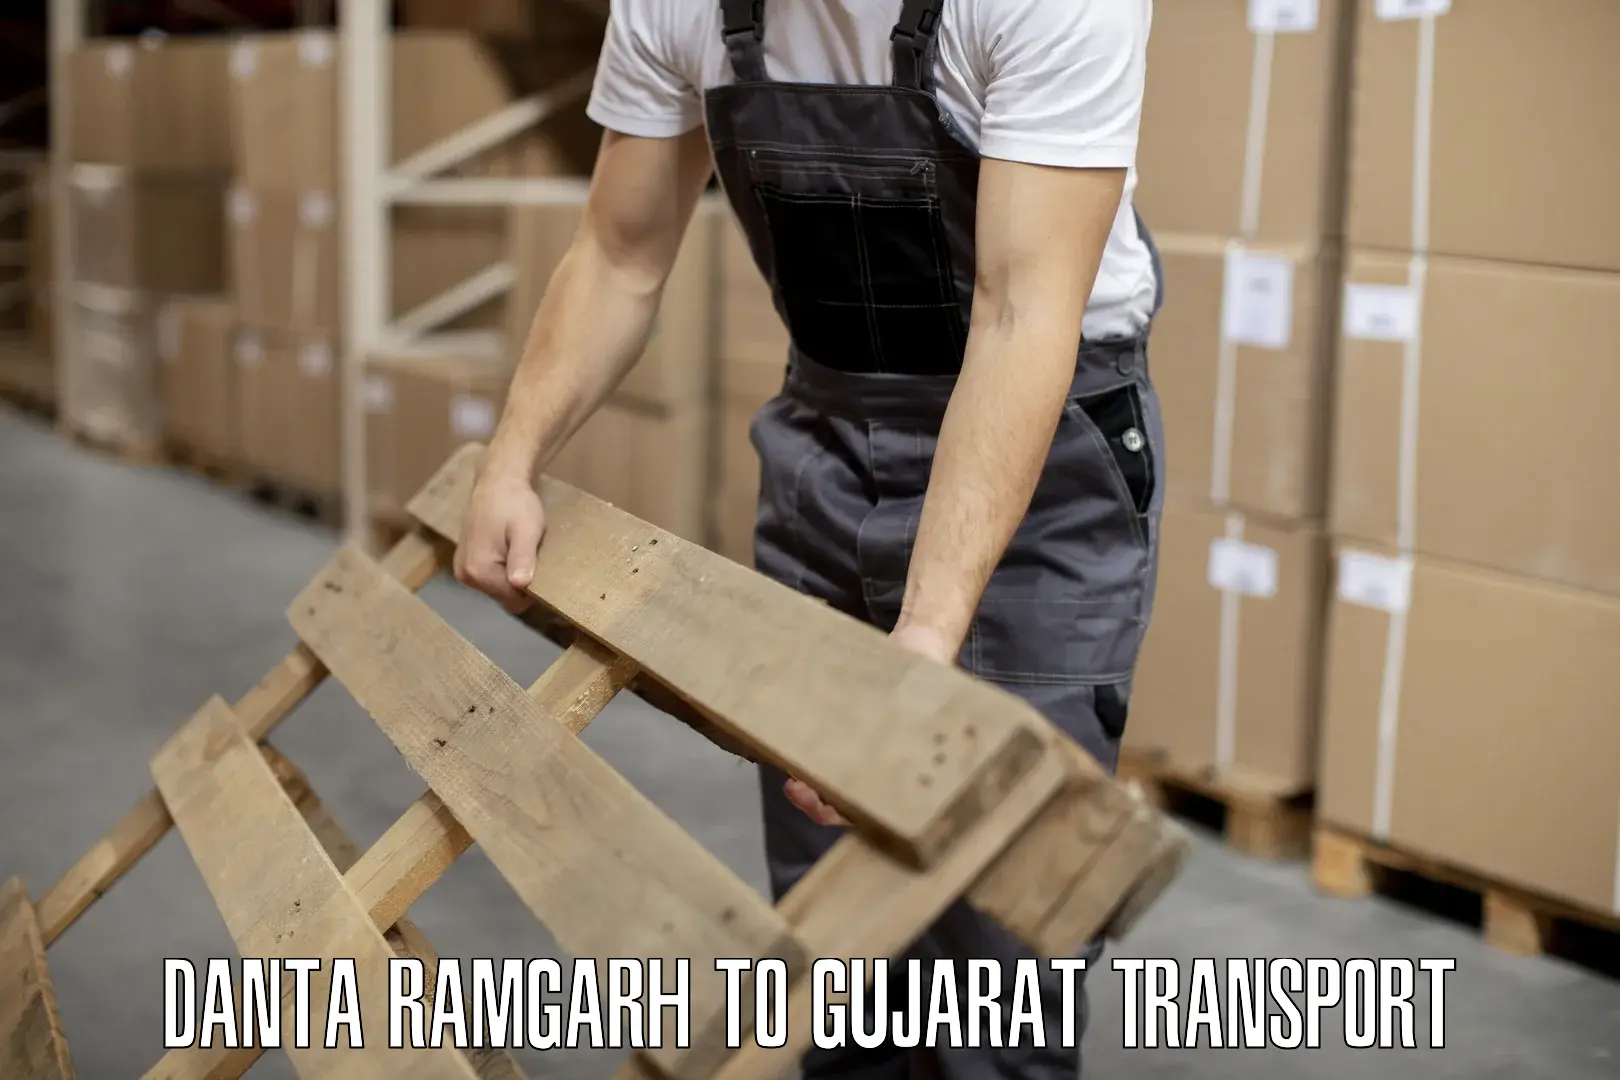 Furniture transport service Danta Ramgarh to Karjan